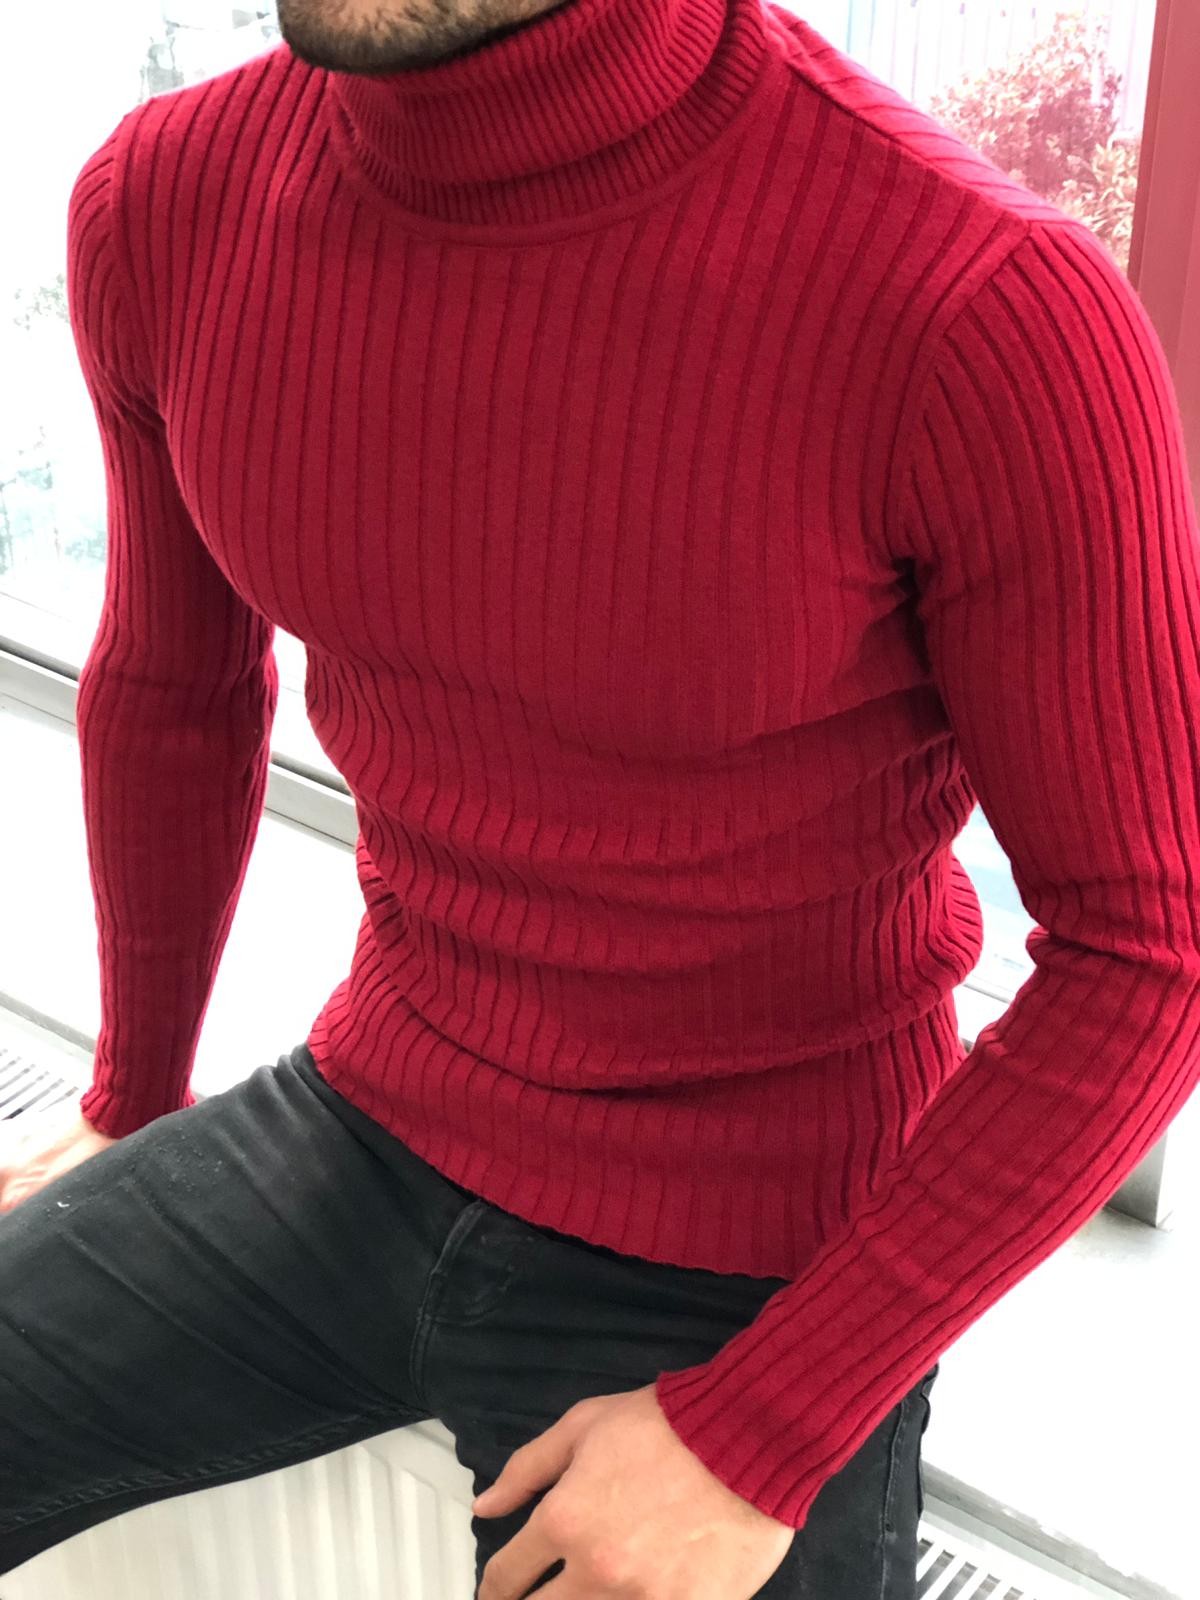 Brown Slim Fit Mock Turtleneck Sweater for Men by